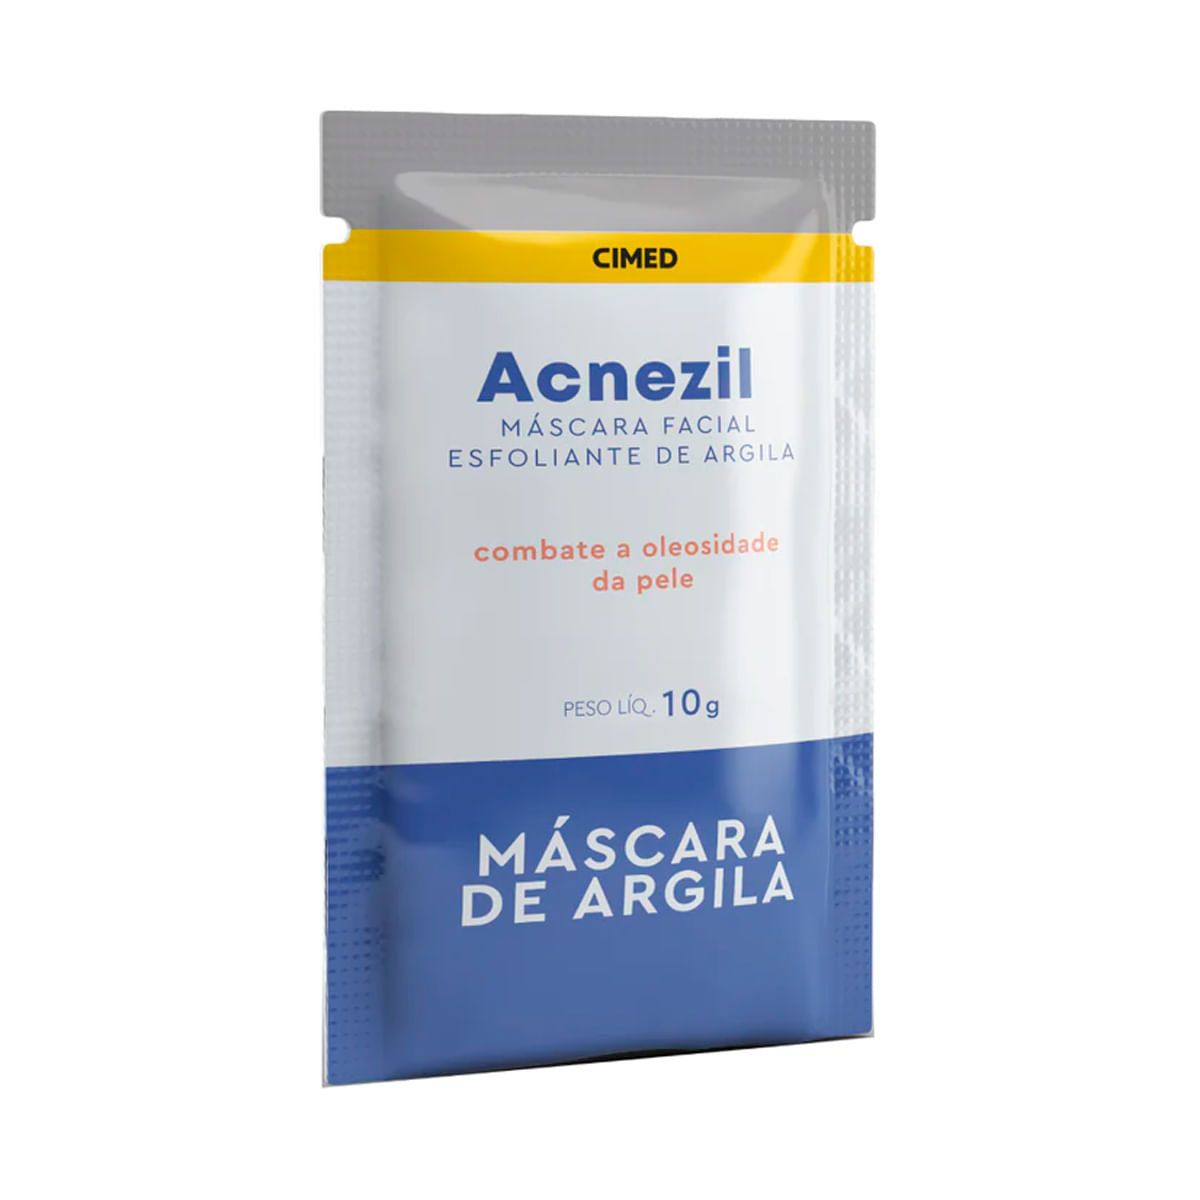 Acnezil Máscara Facial Esfoliante de Argila com 10g CIMED